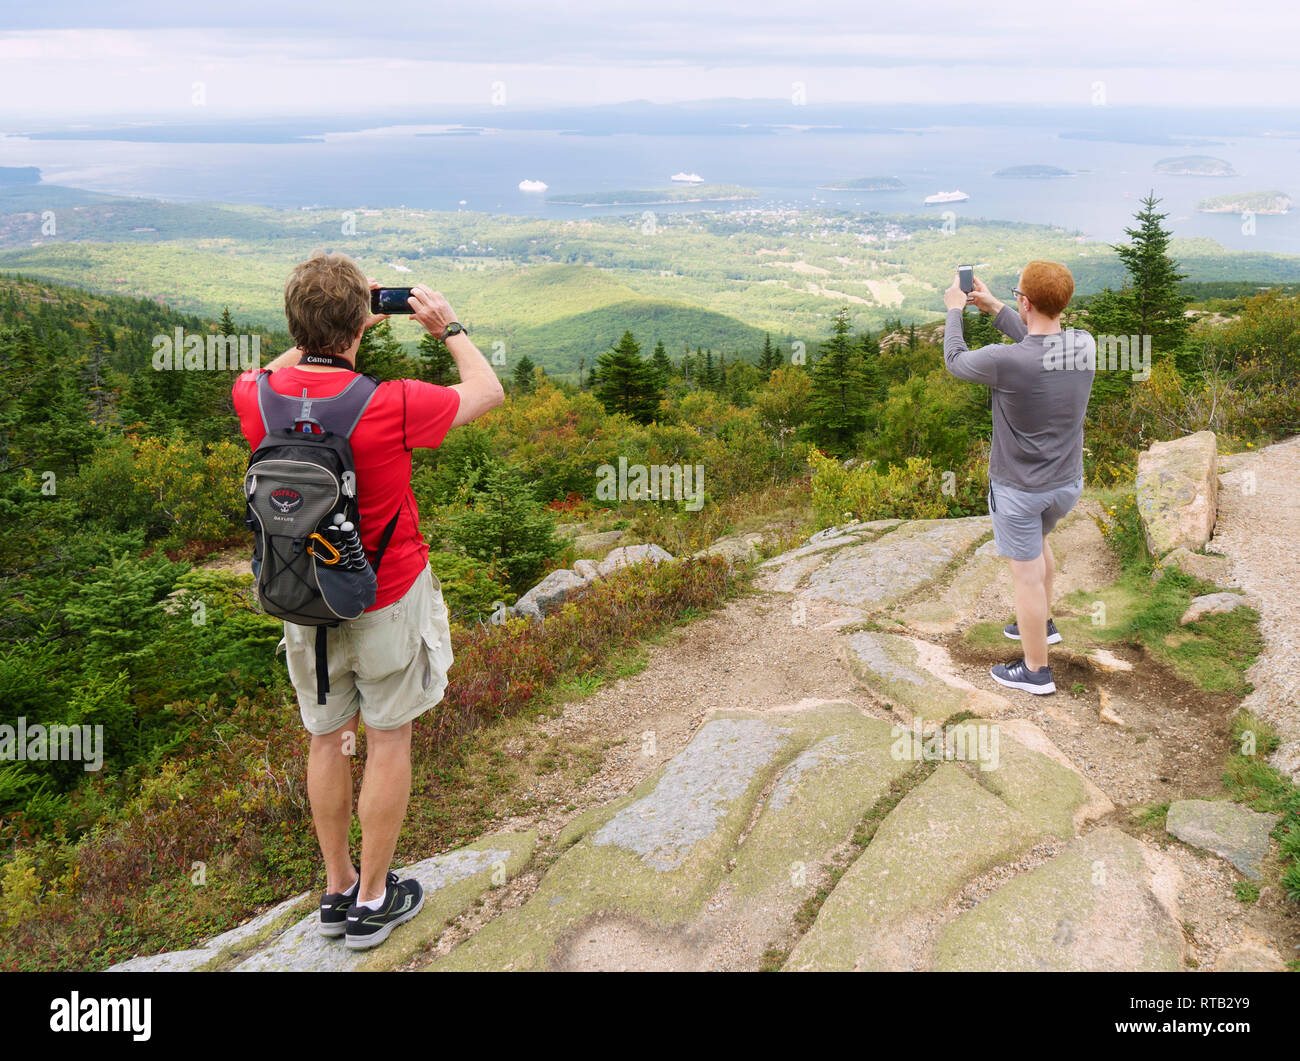 Les visiteurs qui prennent des photos de la Baie Frenchman avec leur téléphone cellulaire à partir du haut de Cadillac Mountain dans l'Acadia National Park, Maine, USA. Banque D'Images